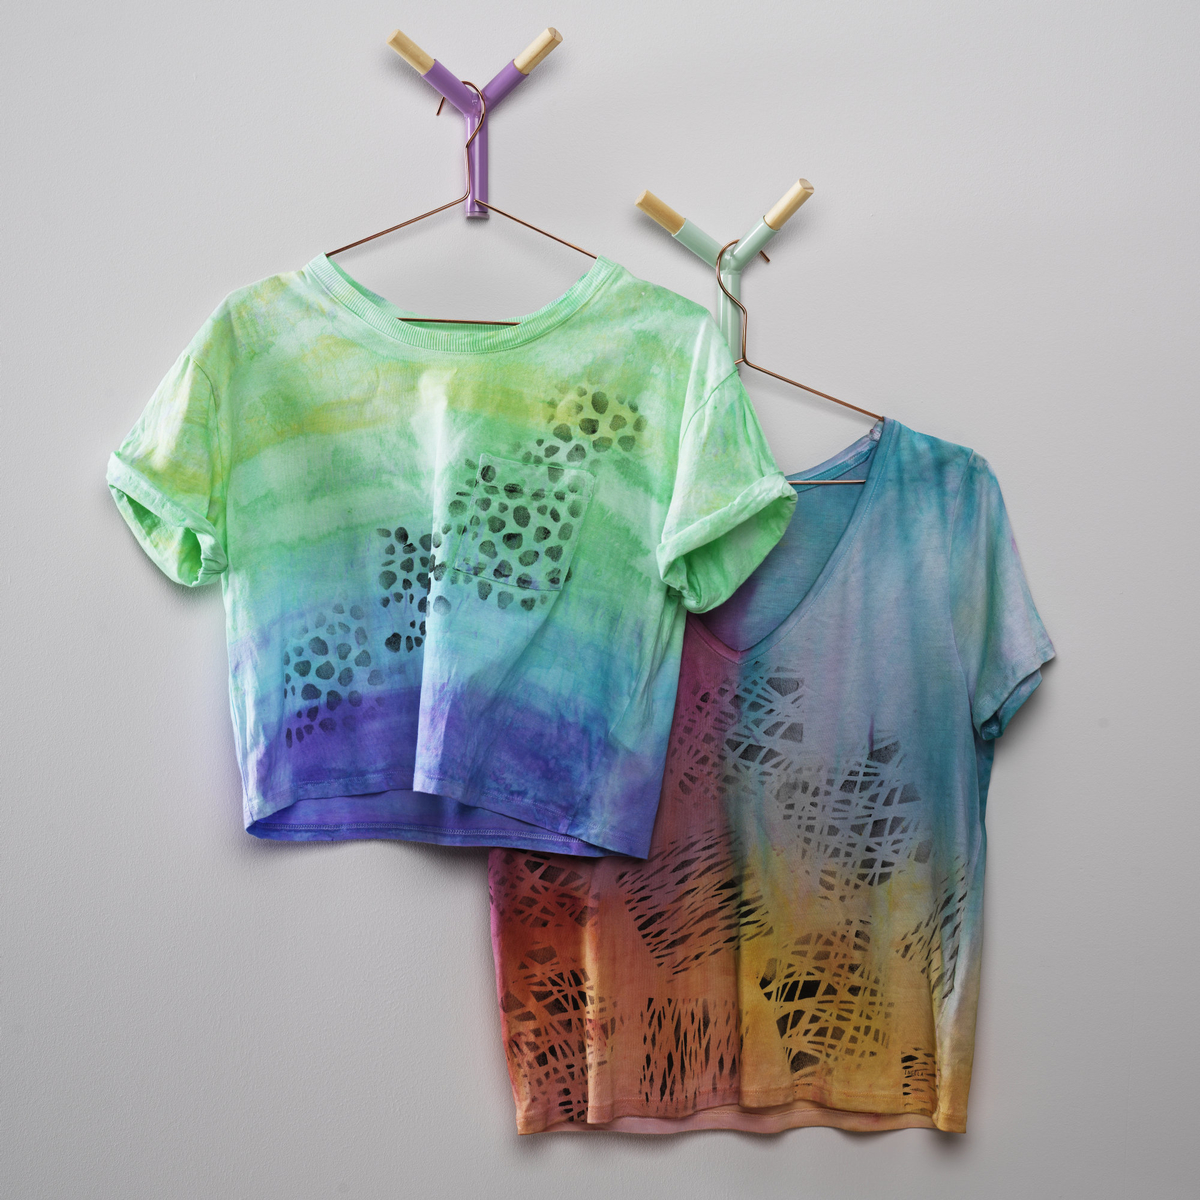 Giv din T-shirt en ny chance med tekstilfarve